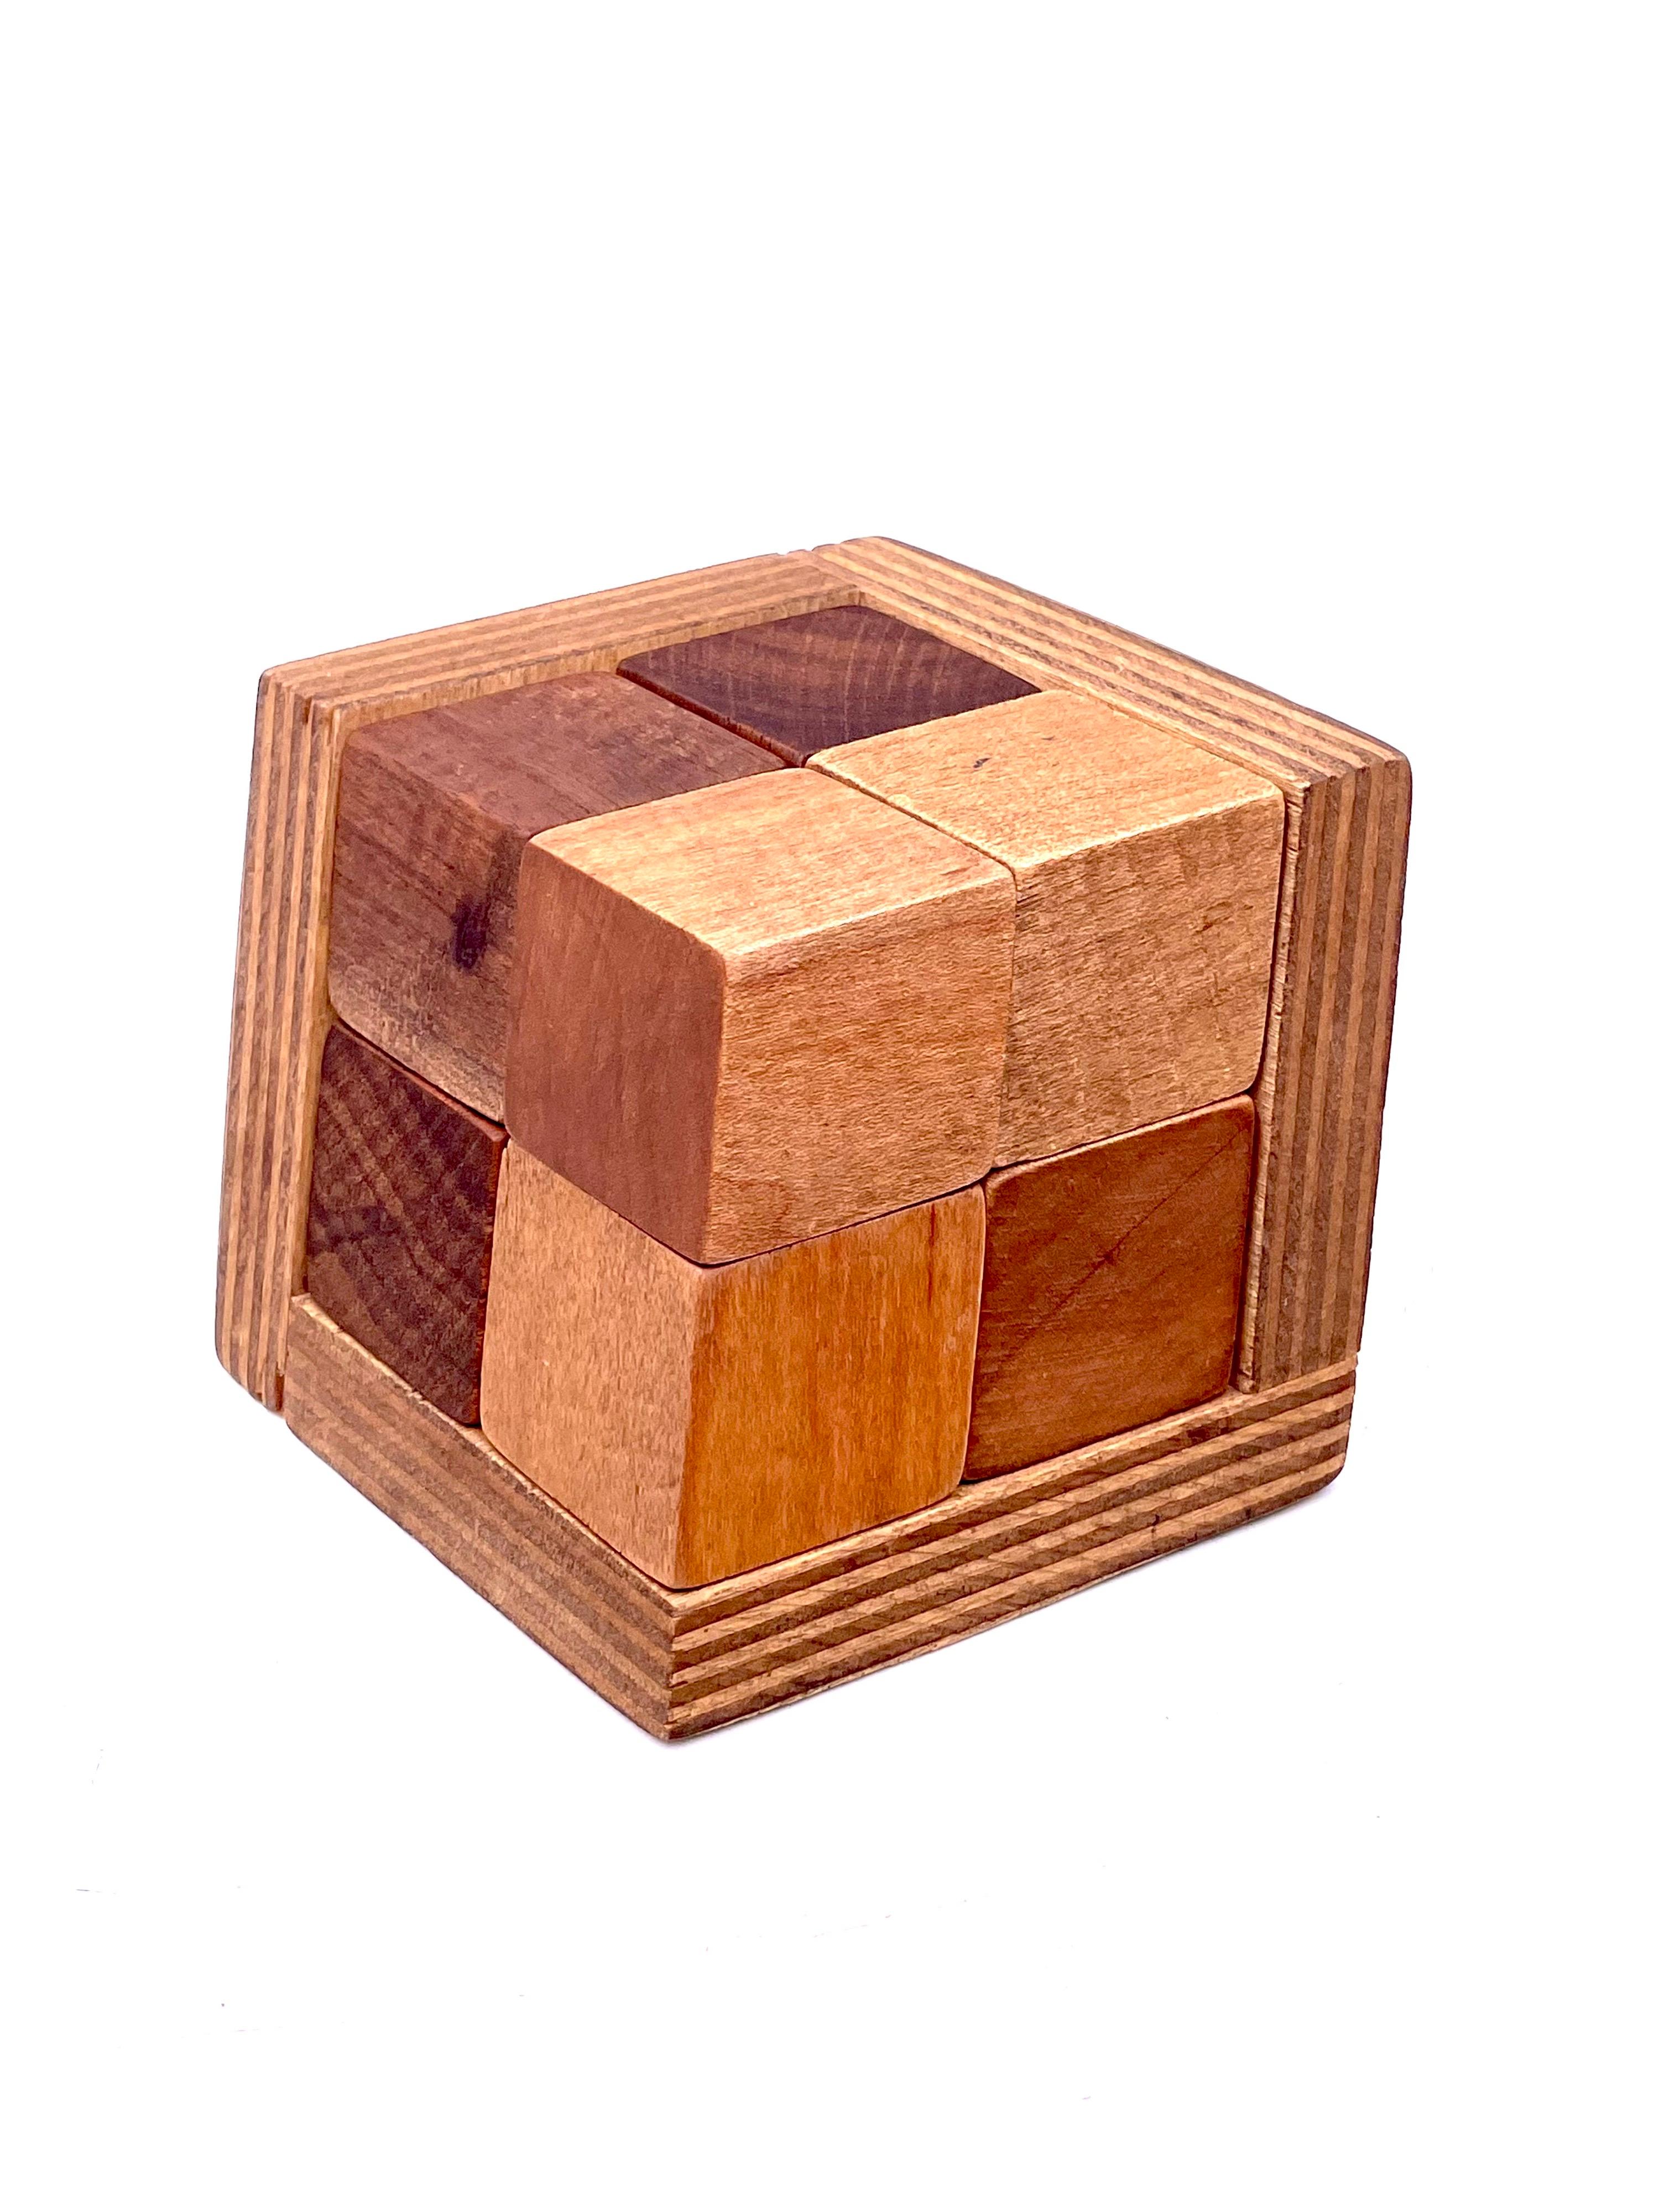 Unglaubliches dreidimensionales Spielzeugpuzzle aus Holz, mit Magneten, die sich um 1970 zusammenfügen, ein Kunstwerk für sich.